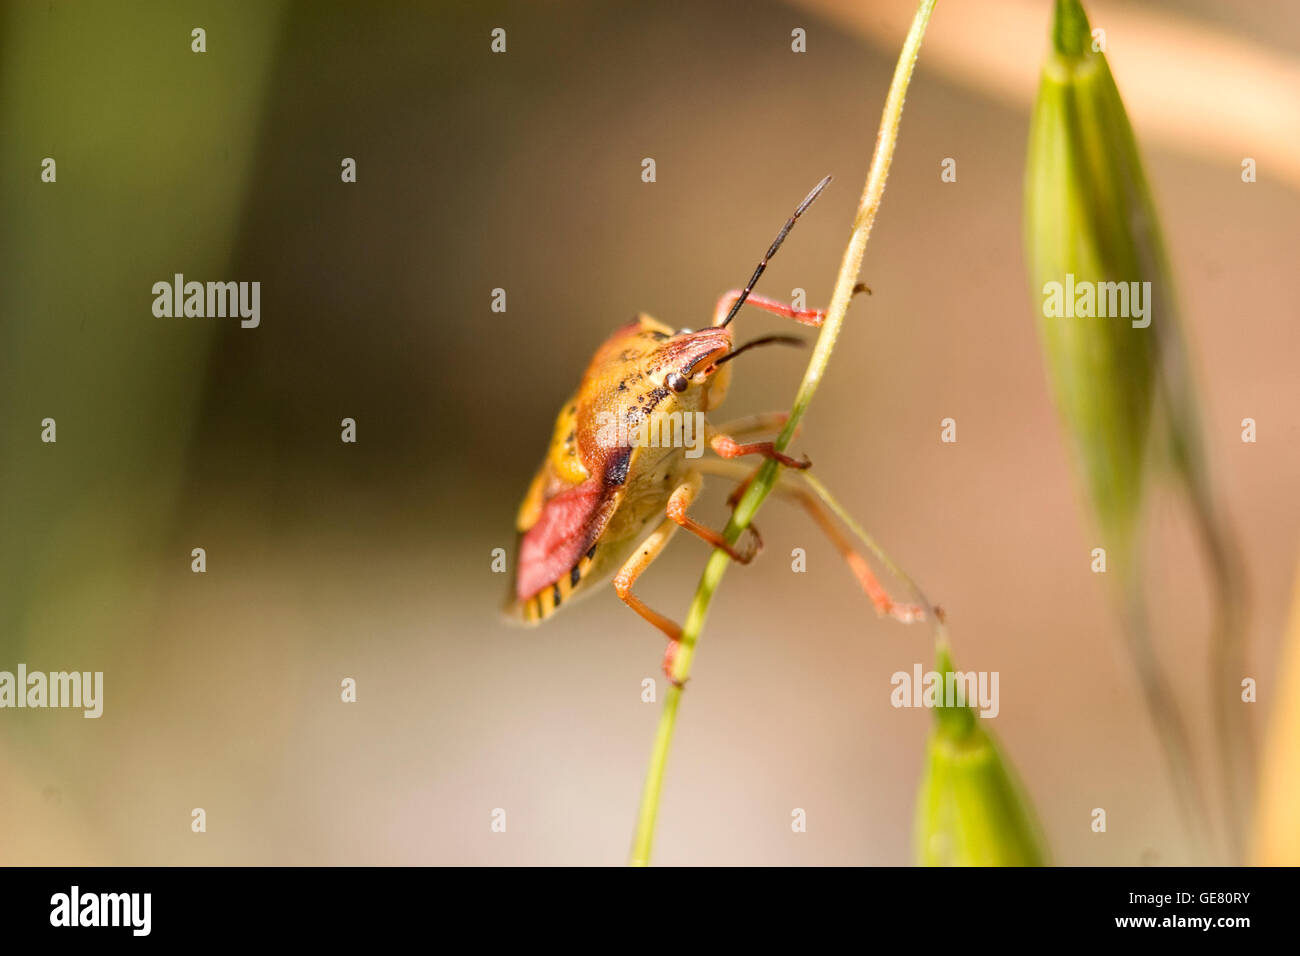 Bouclier coloré bug shot close up. Bug dans l'accent avec des origines floues. Très coloré et lumineux photo tourné en été, avec beaucoup de lumière. Banque D'Images